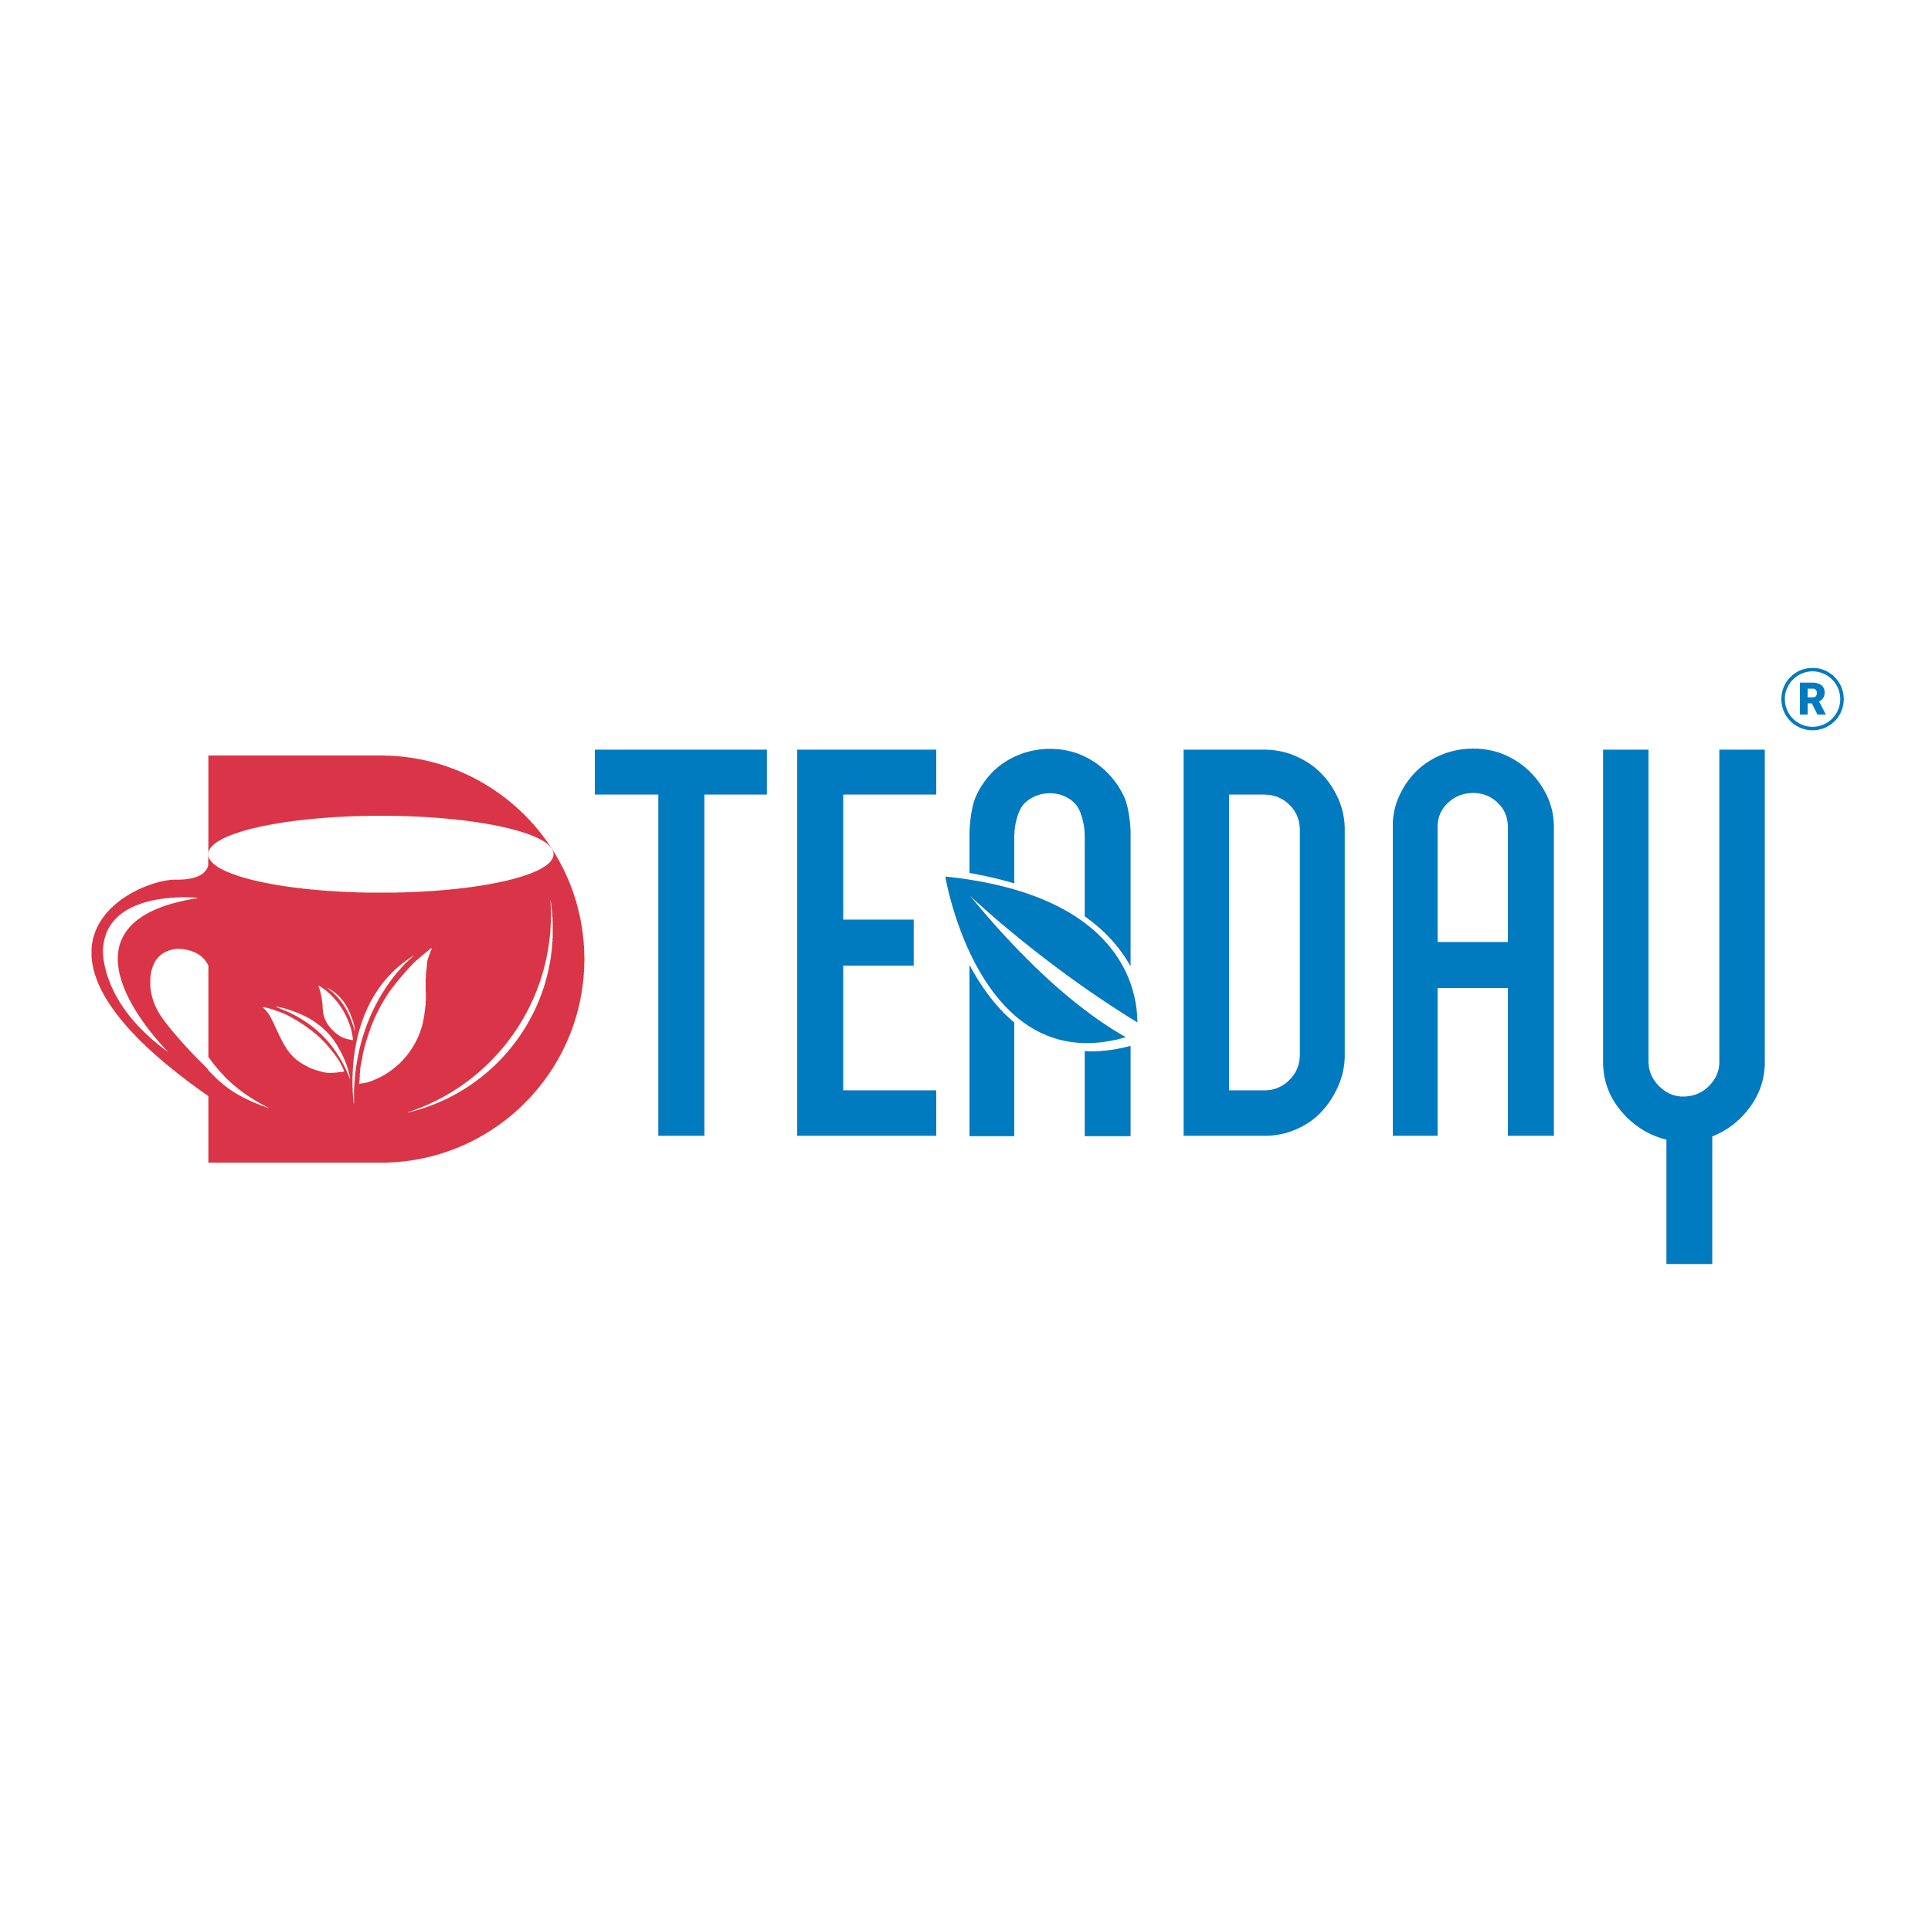 Tea Day logo